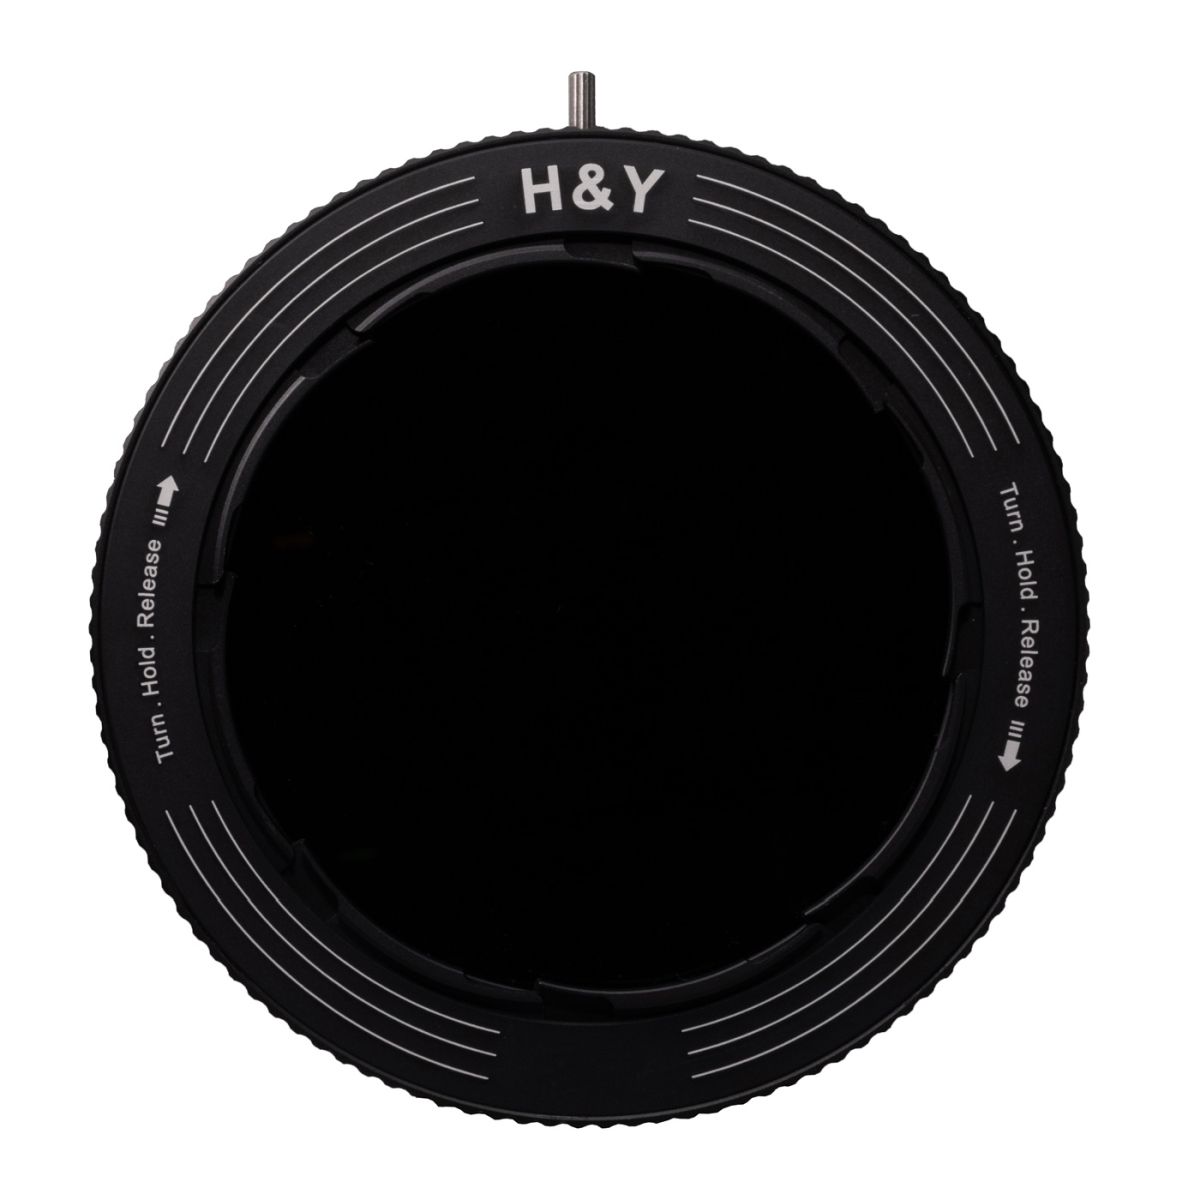 H&Y REVORING 82 - 95 mm ND3-ND1000 und CPL Filter